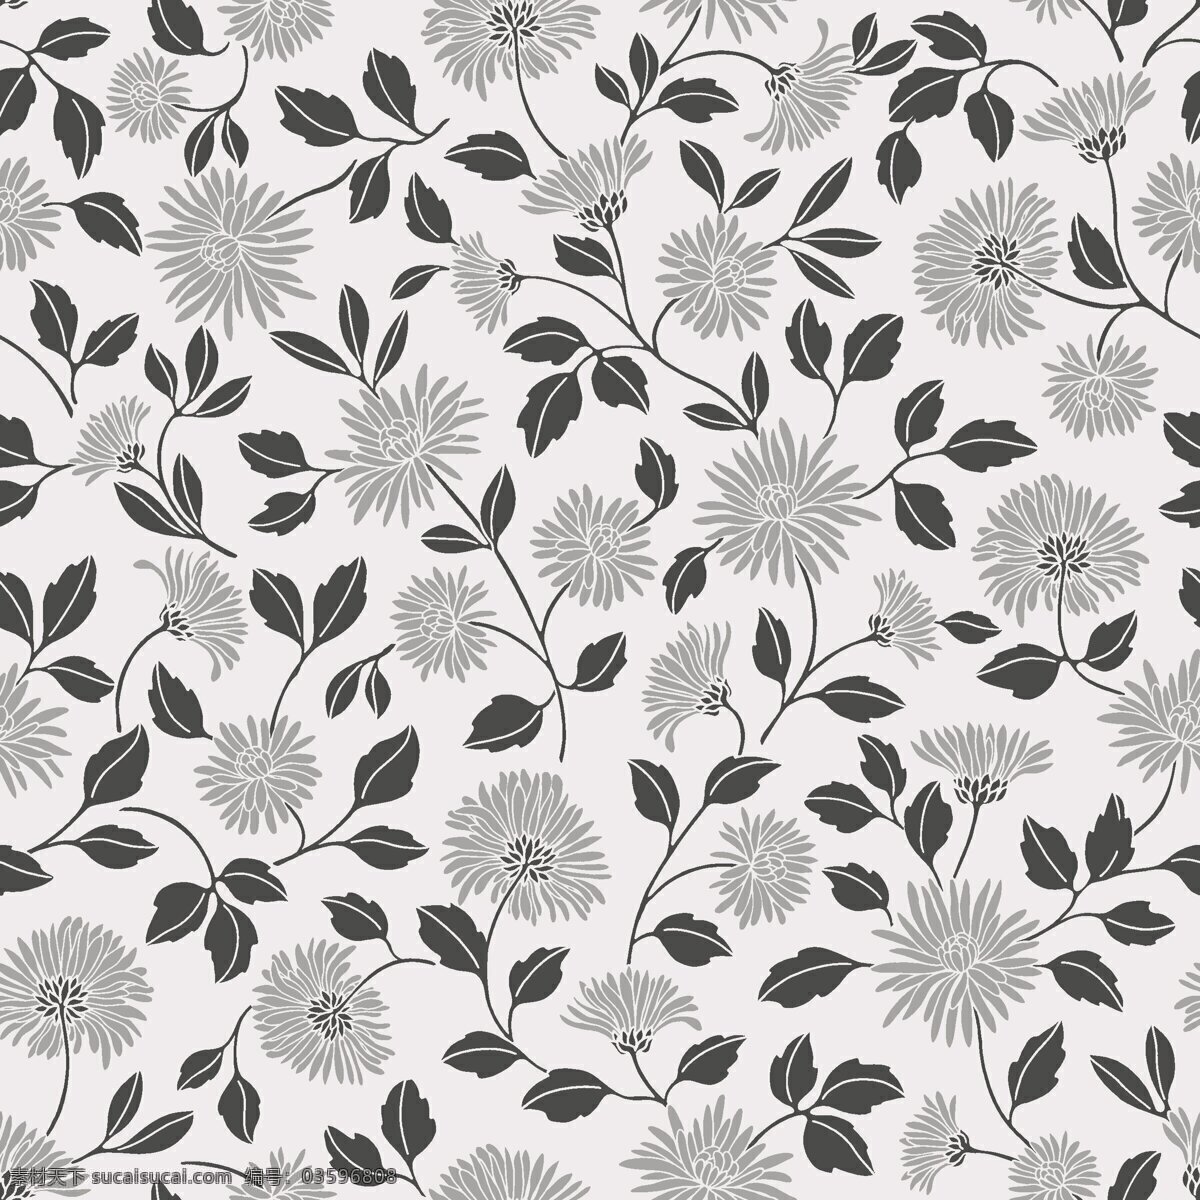 现代 简约 灰色 花朵 壁纸 图案 壁纸图案 黑色树叶 灰色花朵 浅色底纹 植物元素